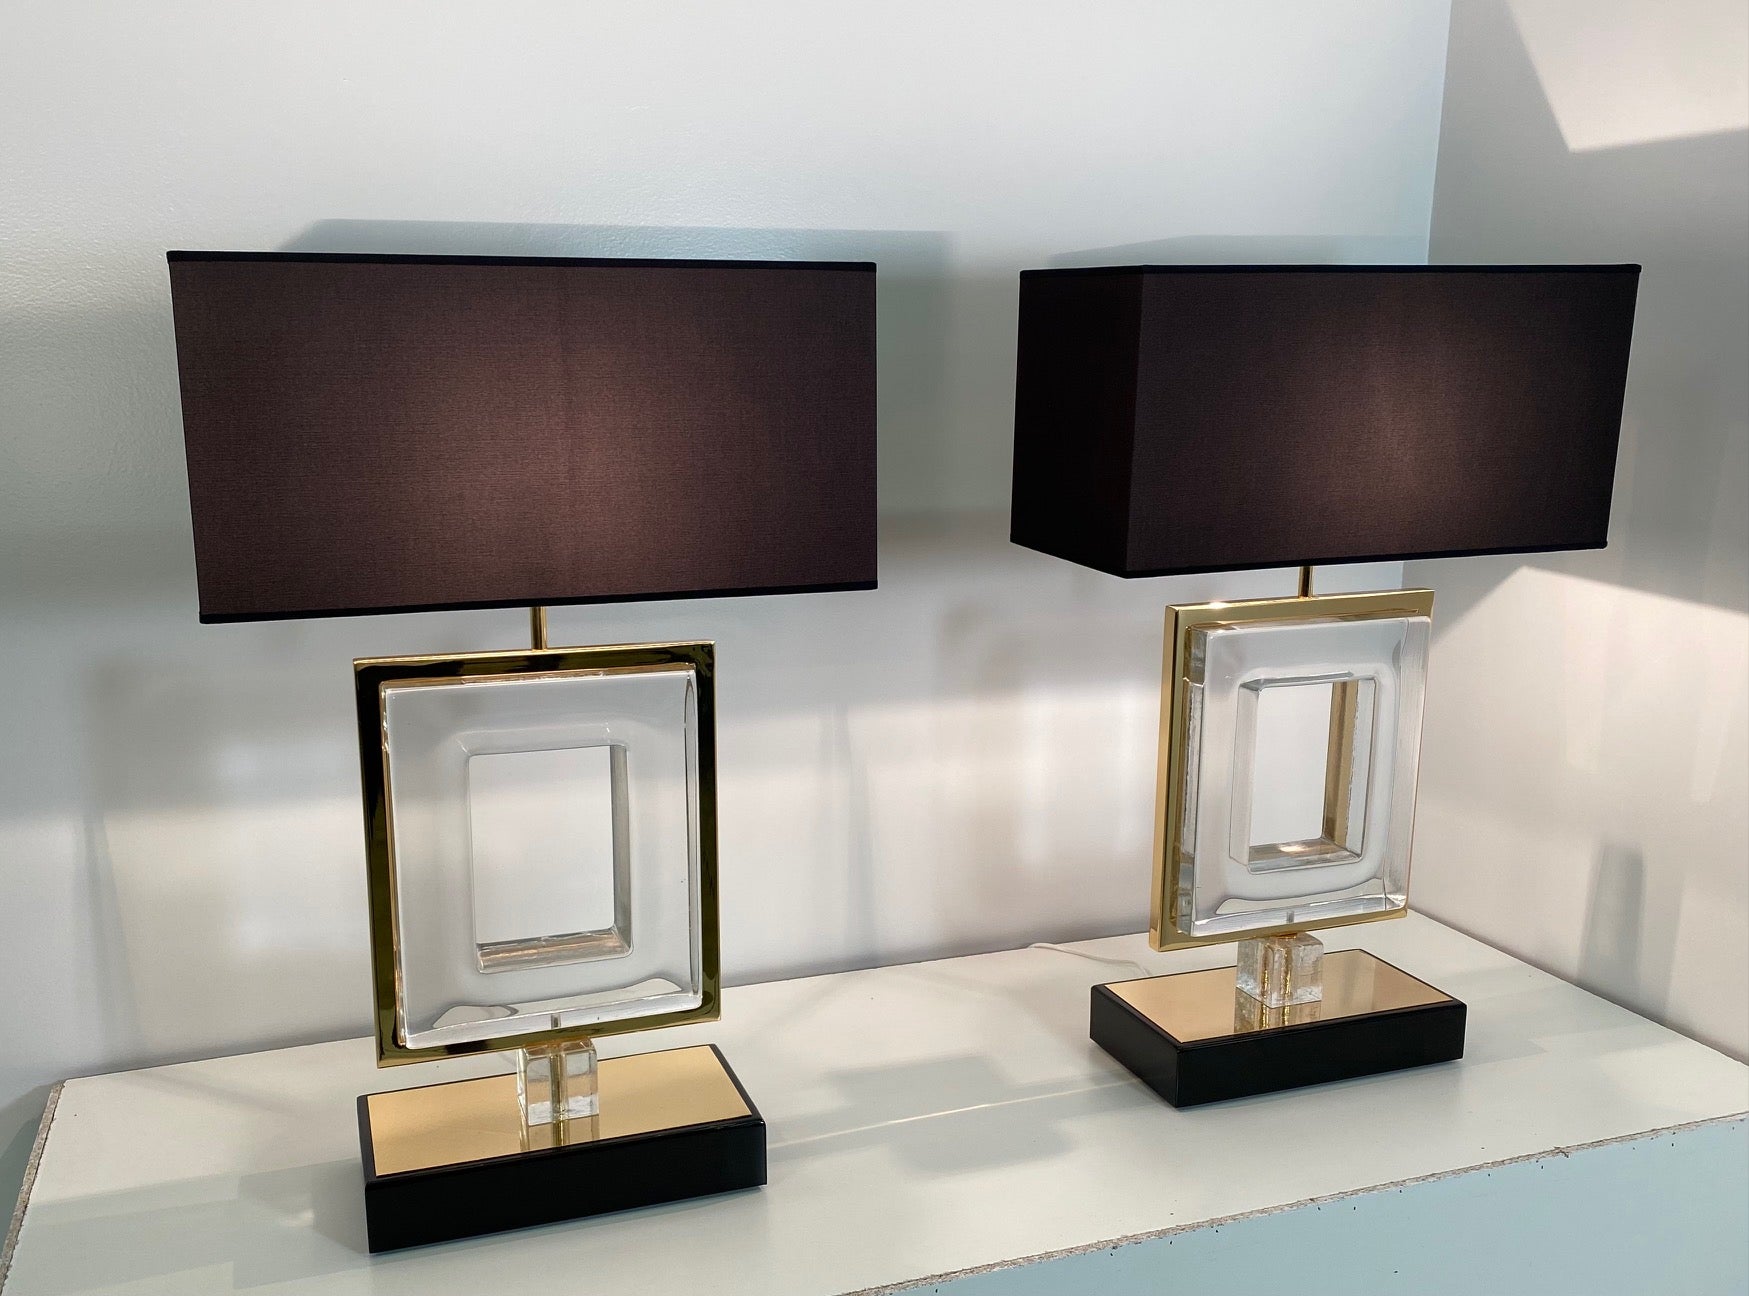 Art-Déco-Lampenpaar, hergestellt in Italien, genauer gesagt in Murano, der Welthauptstadt der Glasherstellung und -verarbeitung. 

Sie sind aus klarem Muranoglas und goldfarbenem Metall gefertigt. Der Lampenschirm und das Profil des Sockels sind